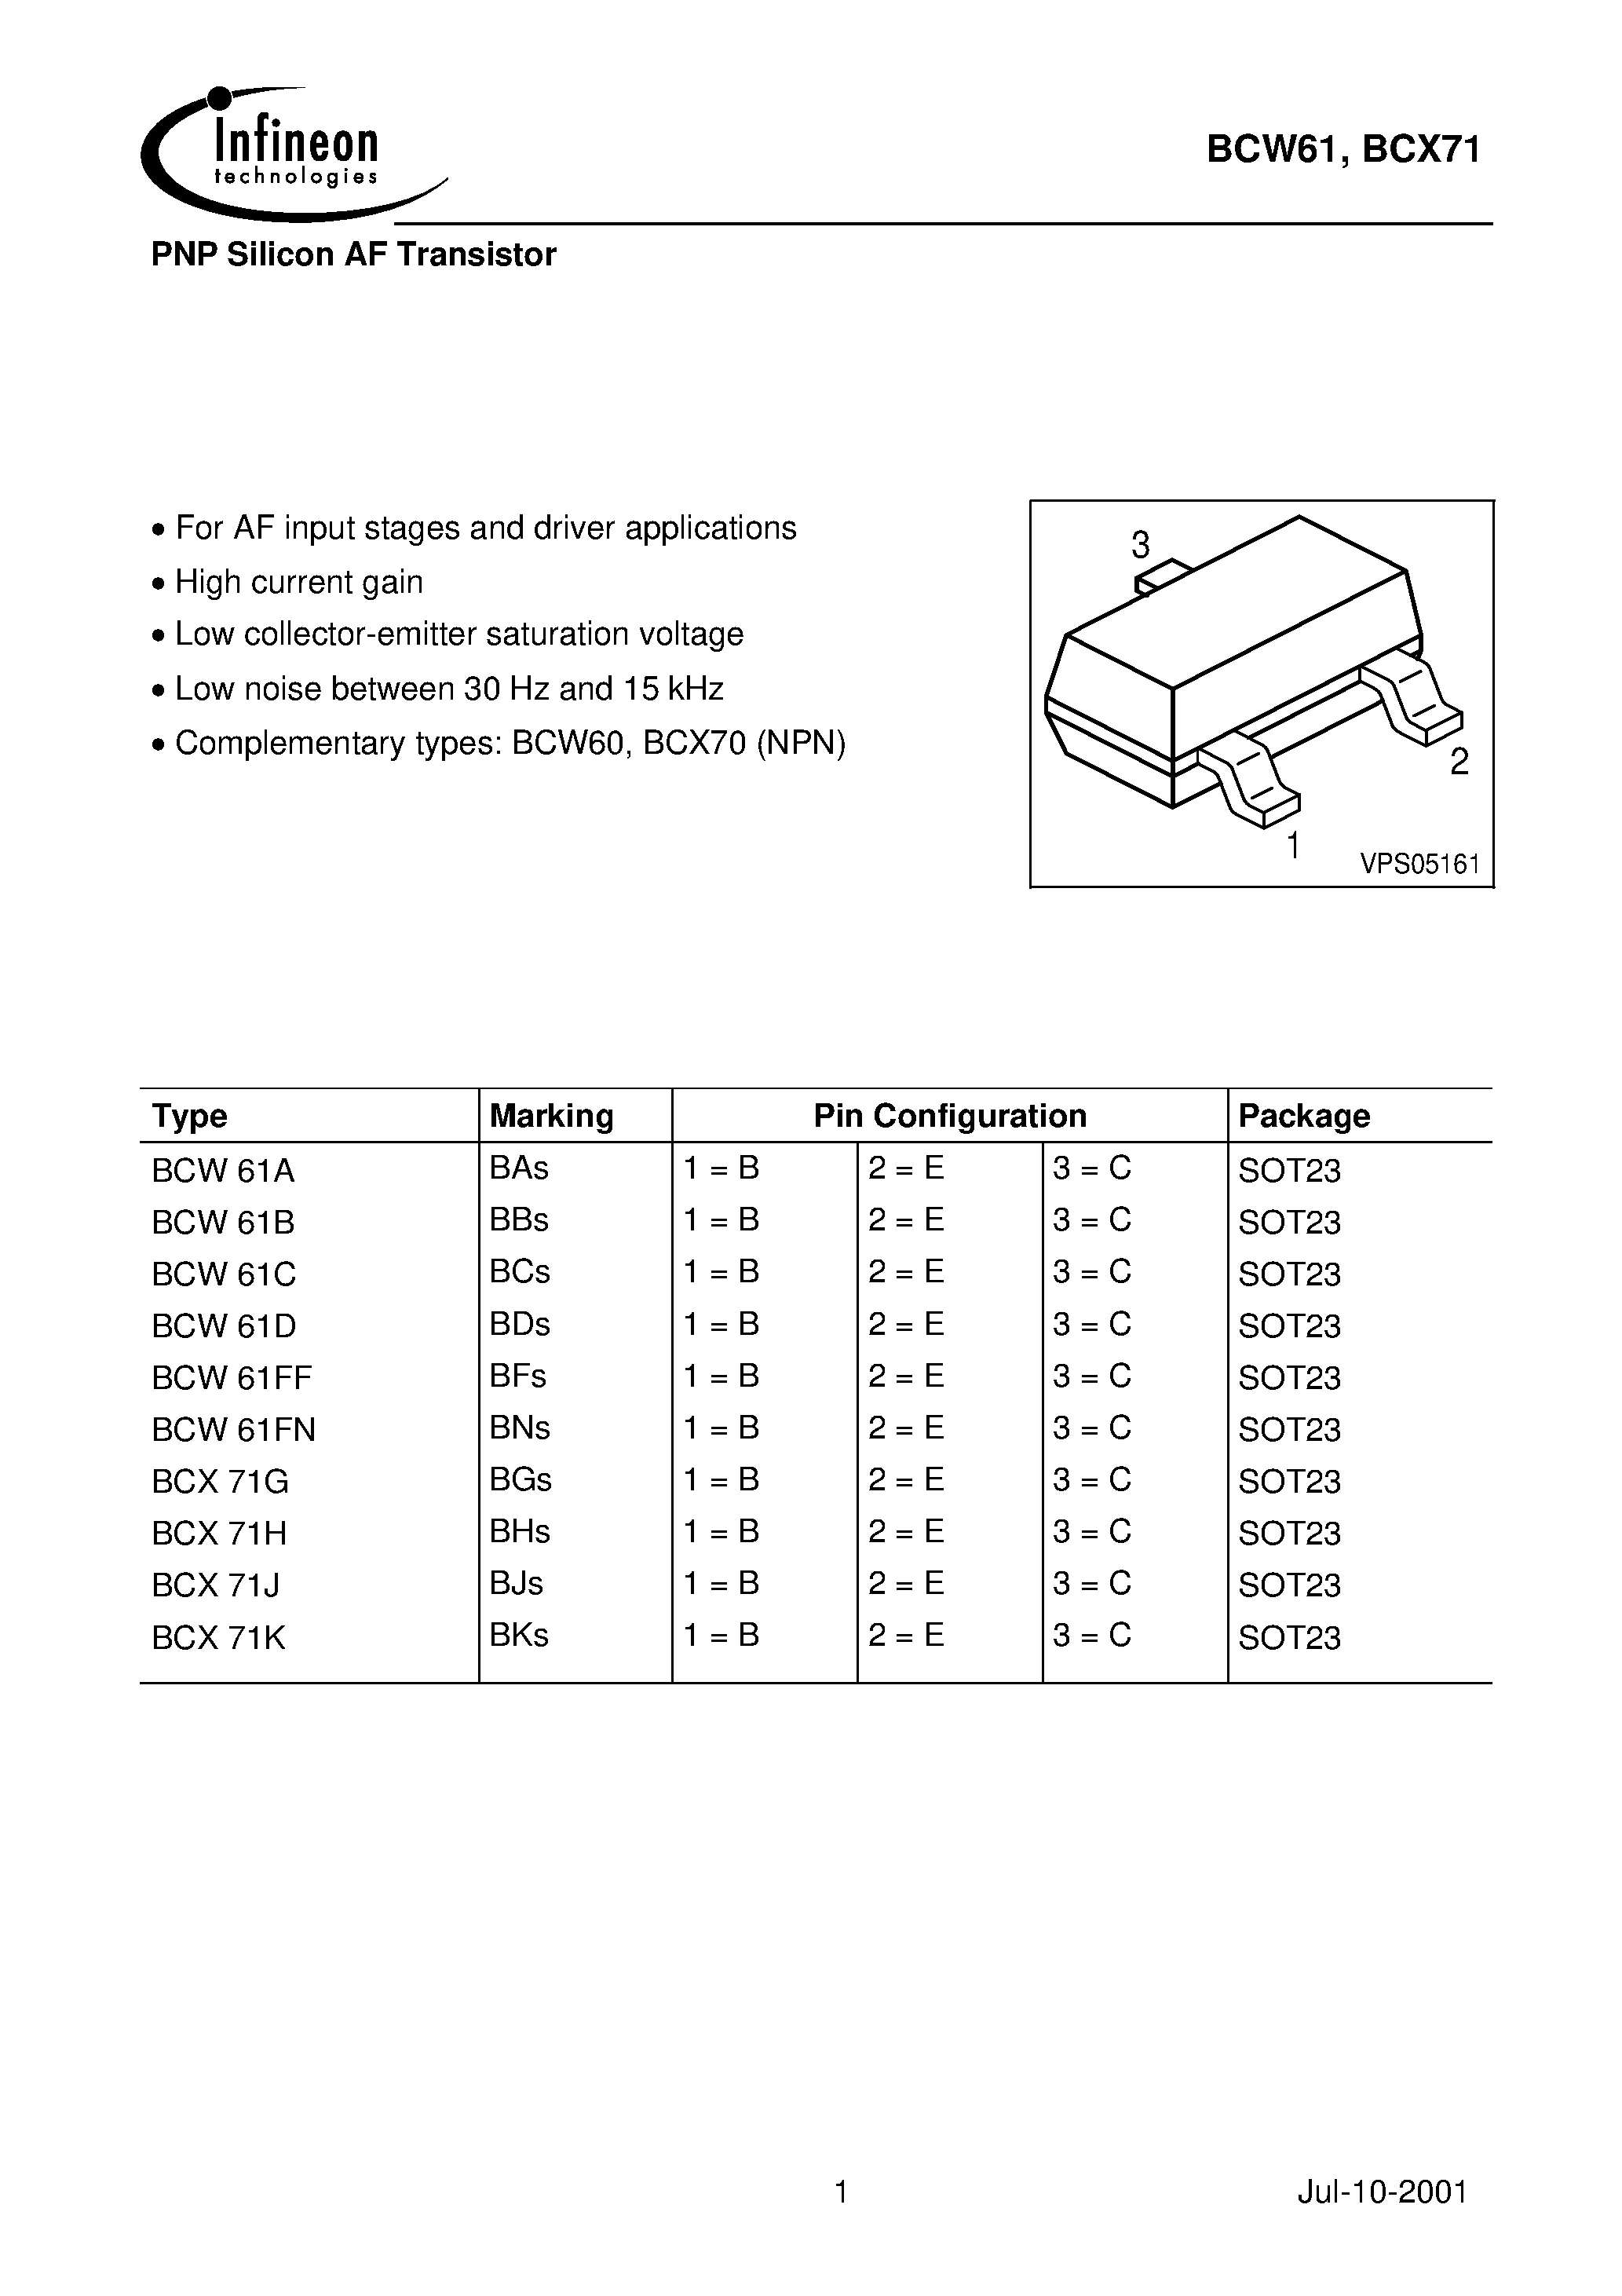 Datasheet BCX71J - PNP Silicon AF Transistor page 1